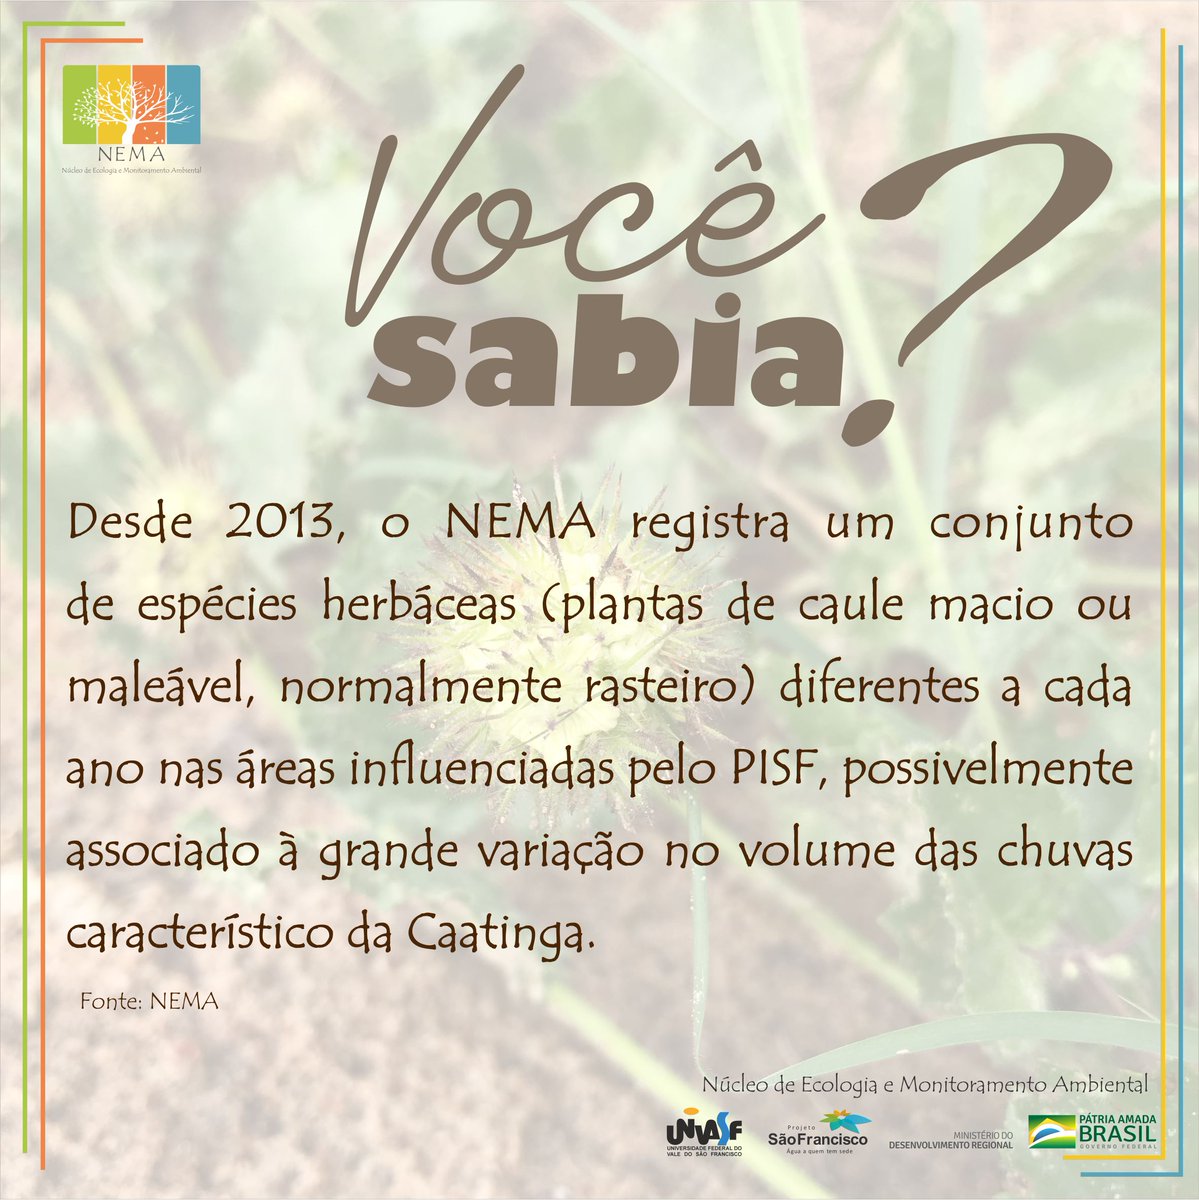 Quer conhecer mais sobre as ações do NEMA? Acesse: nema.univasf.edu.br 
#Ecologia #MonitoramentoAmbiental #UNIVASF #Caatinga #PISF #Biologia #RioSaoFrancisco #Herbáceas #MeioAmbiente #NEMA